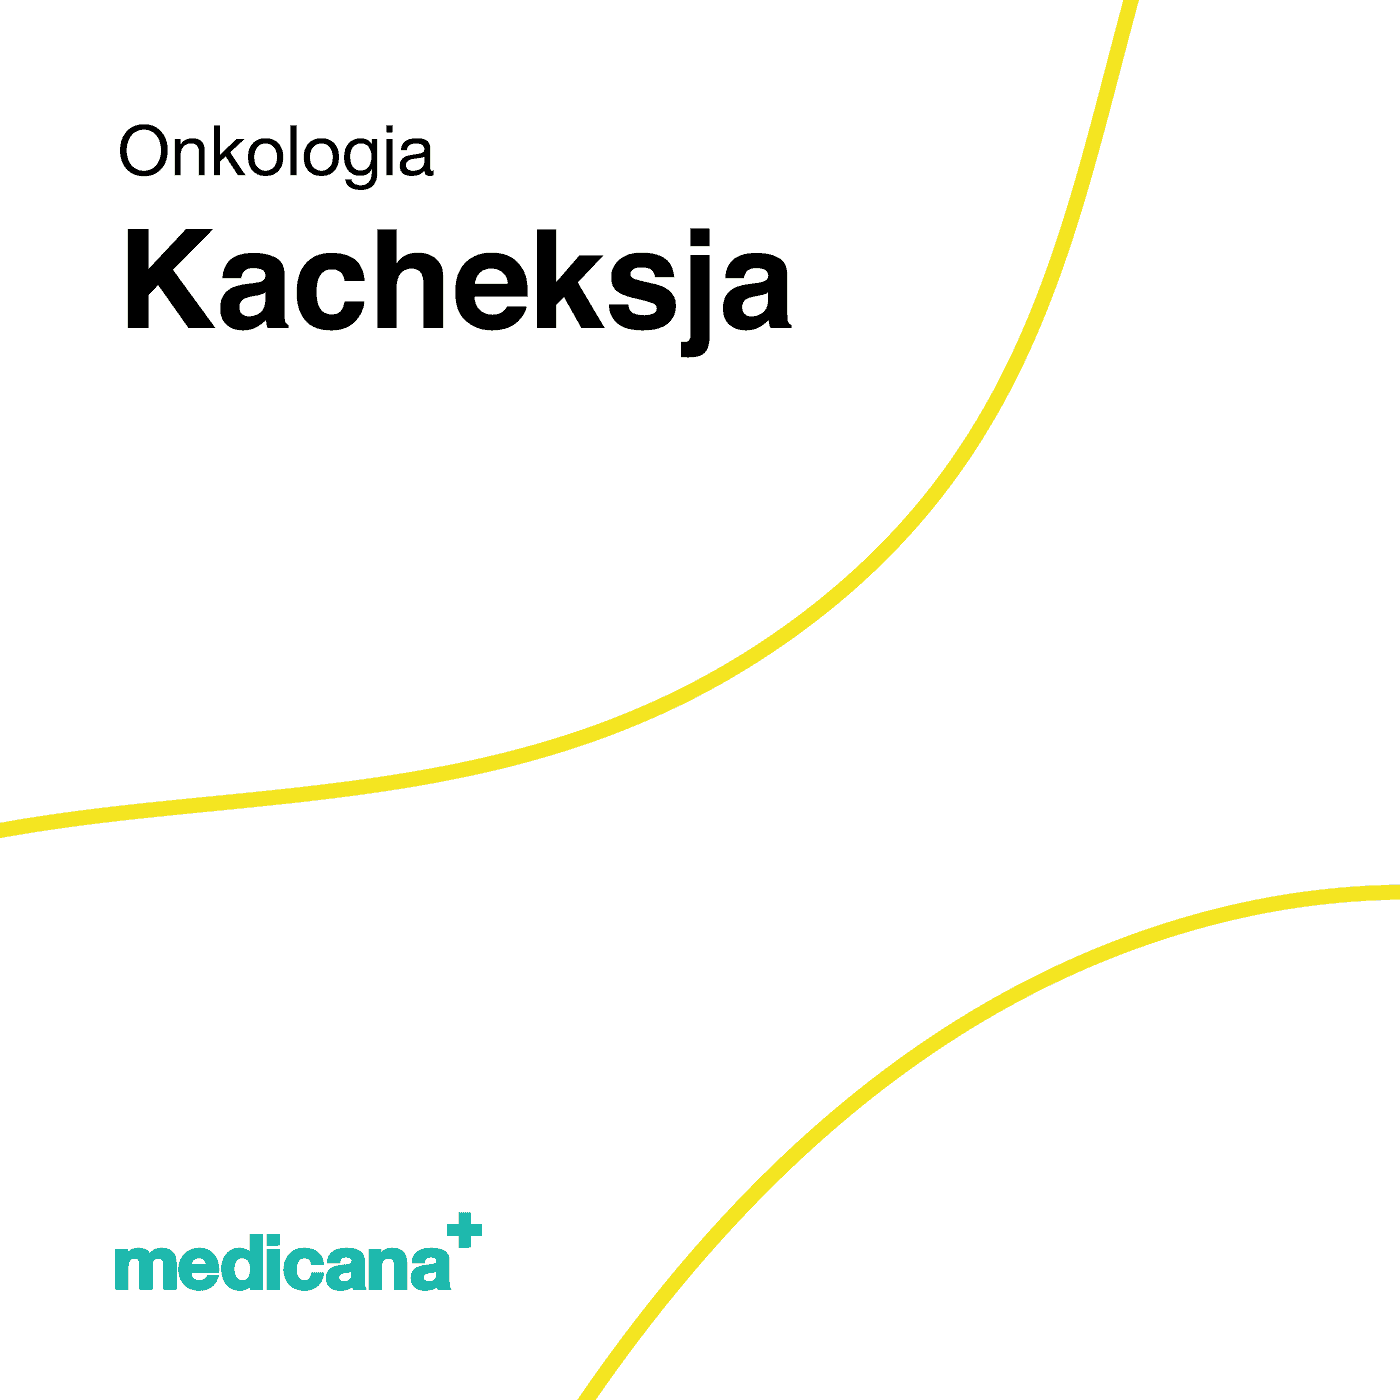 Grafika, białe tło z żółtą kreską, czarnym napisem Onkologia - Kacheksja i logo Medicana Centrum Terapii Medyczna Marihuana w lewym dolnym rogu.